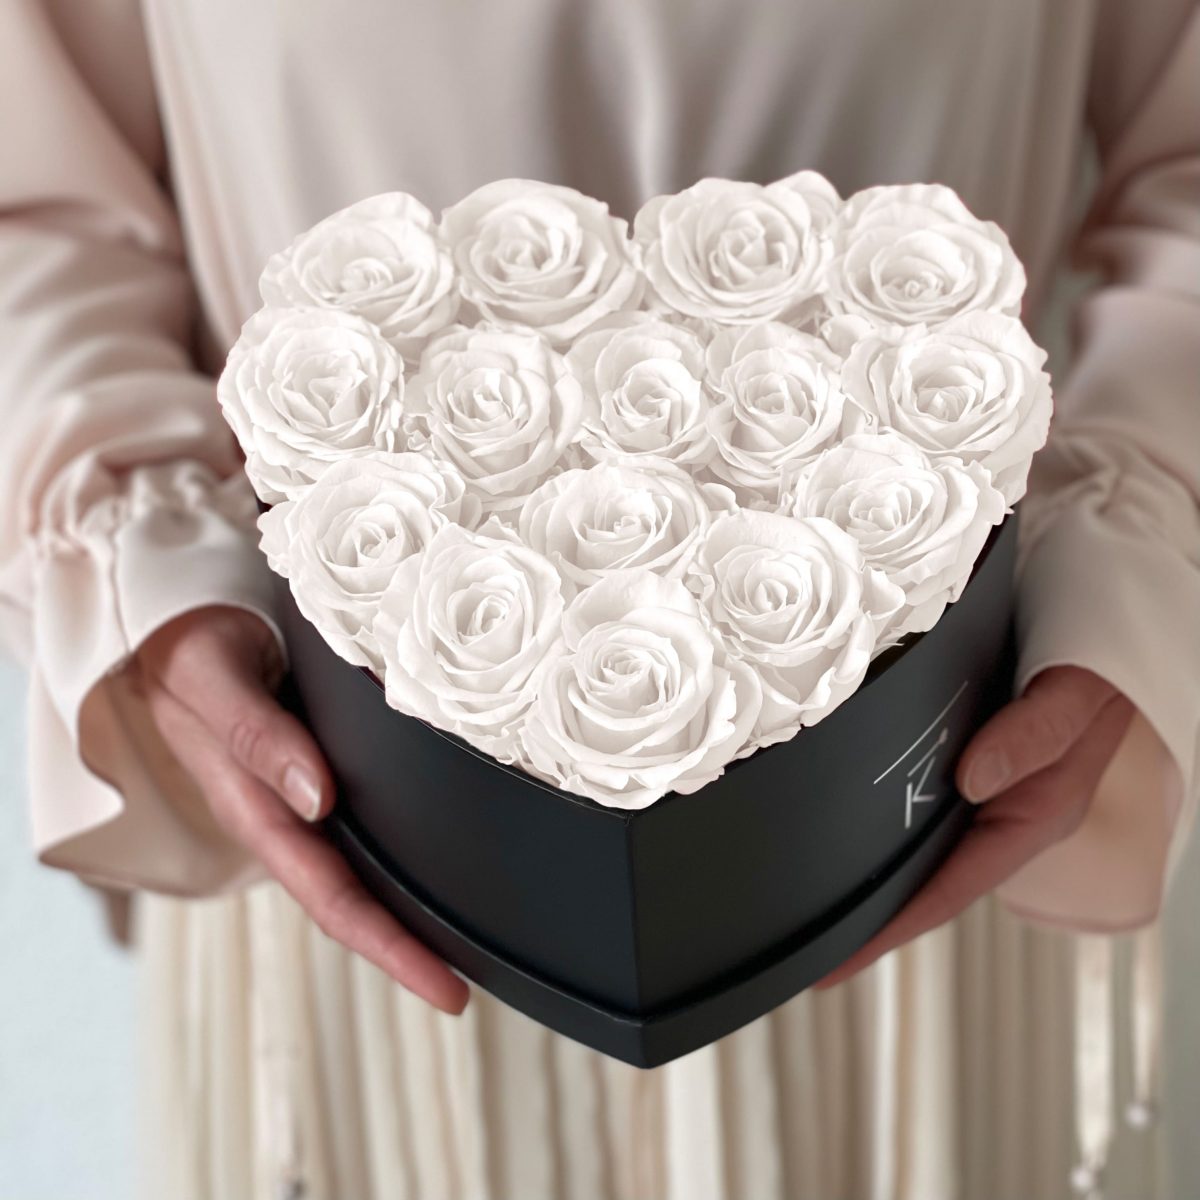 Herzförmige Rosenbox mit weißen Infinityrosen wird in den Händen gehalten